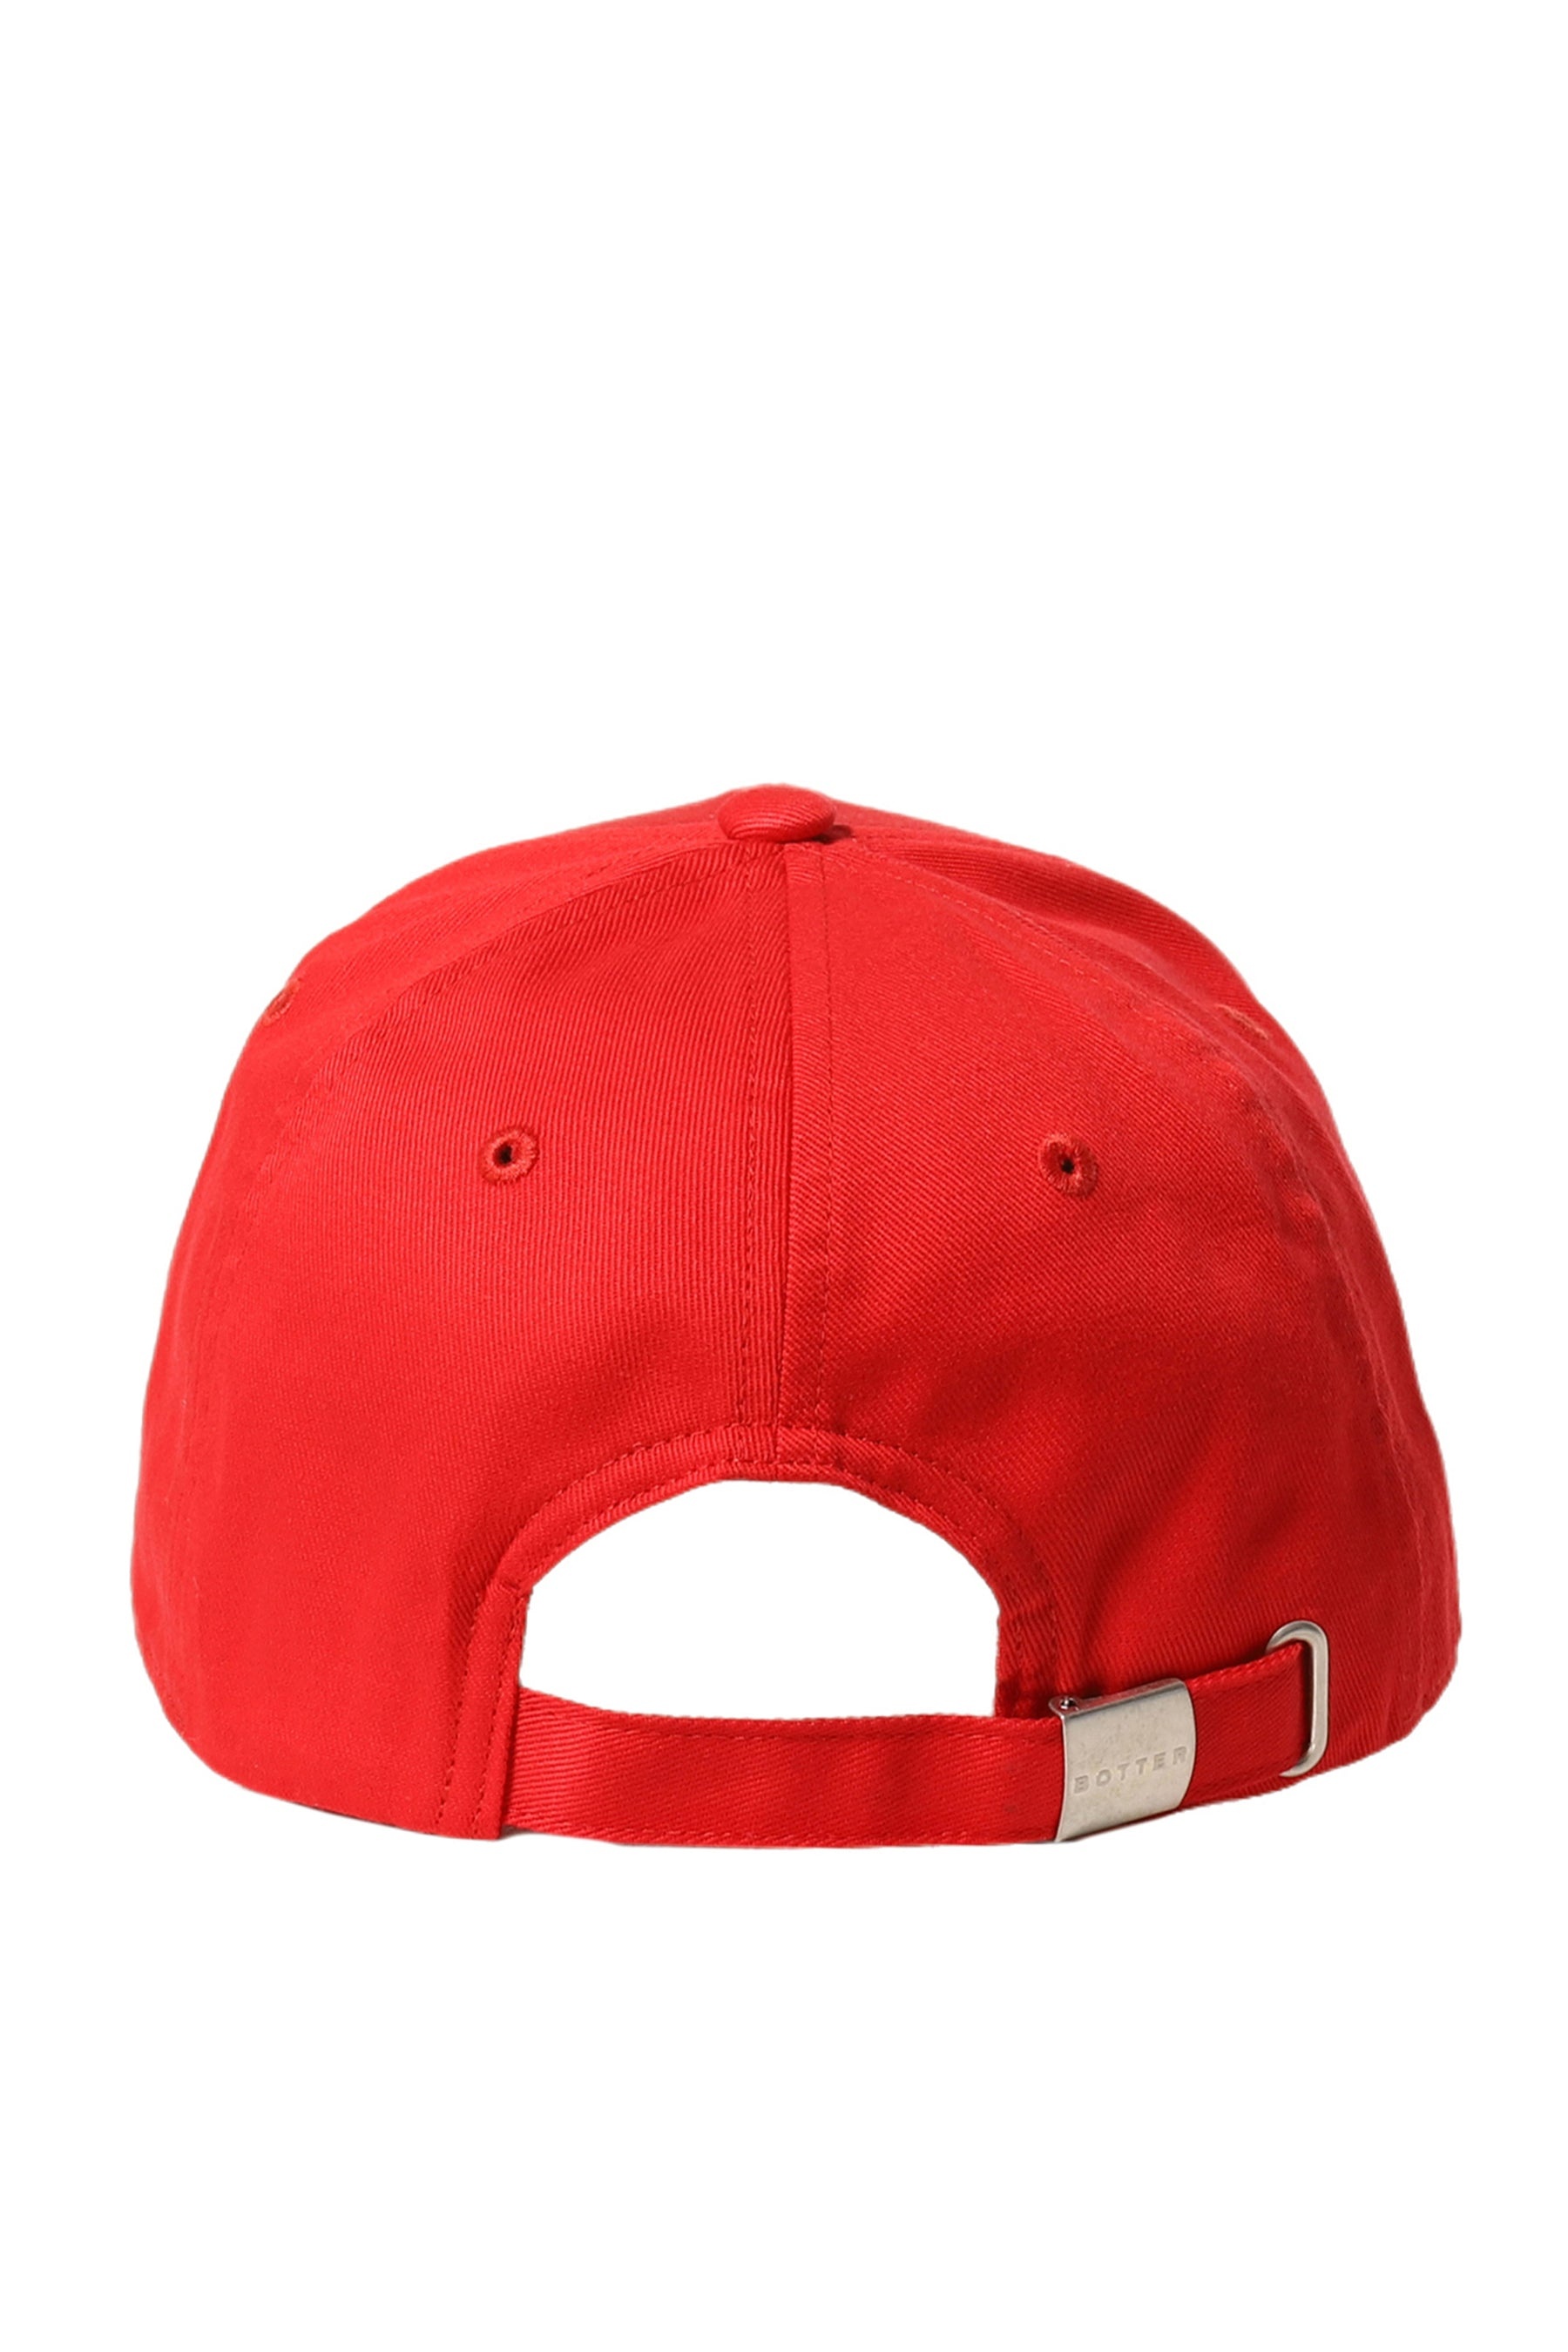 CLASSIC CAP / RED - 2